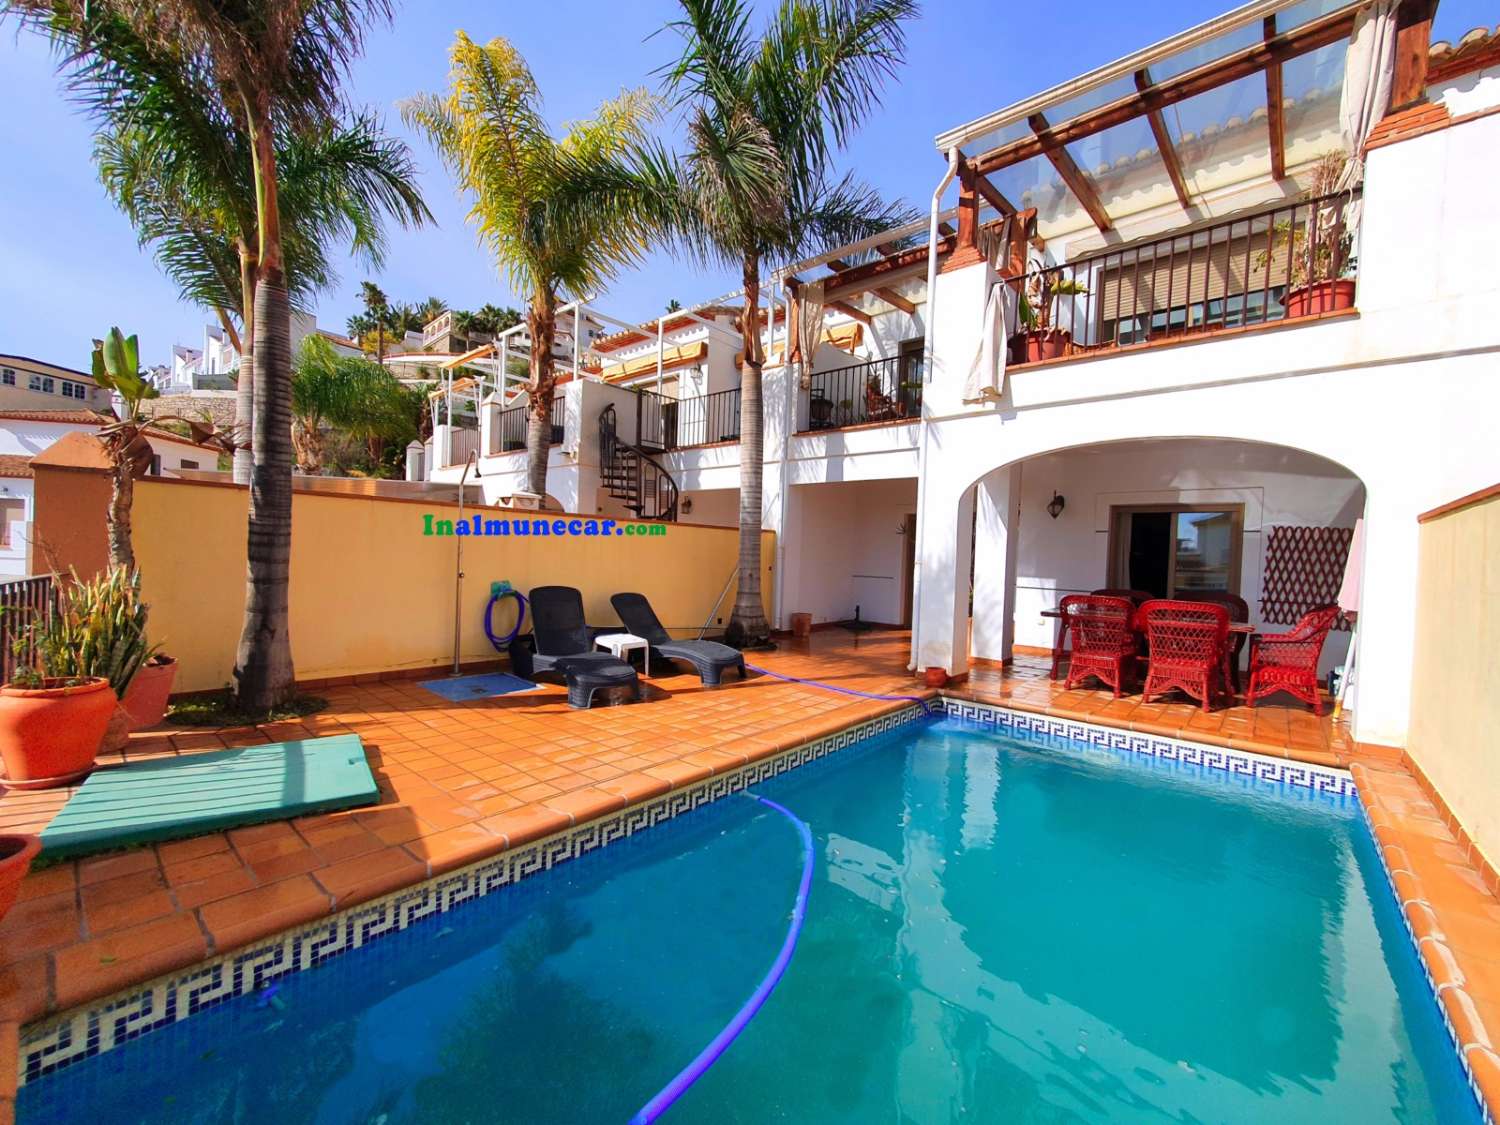 Casa adosada en venta en Almuñecar, muy soleada y con piscina privada.